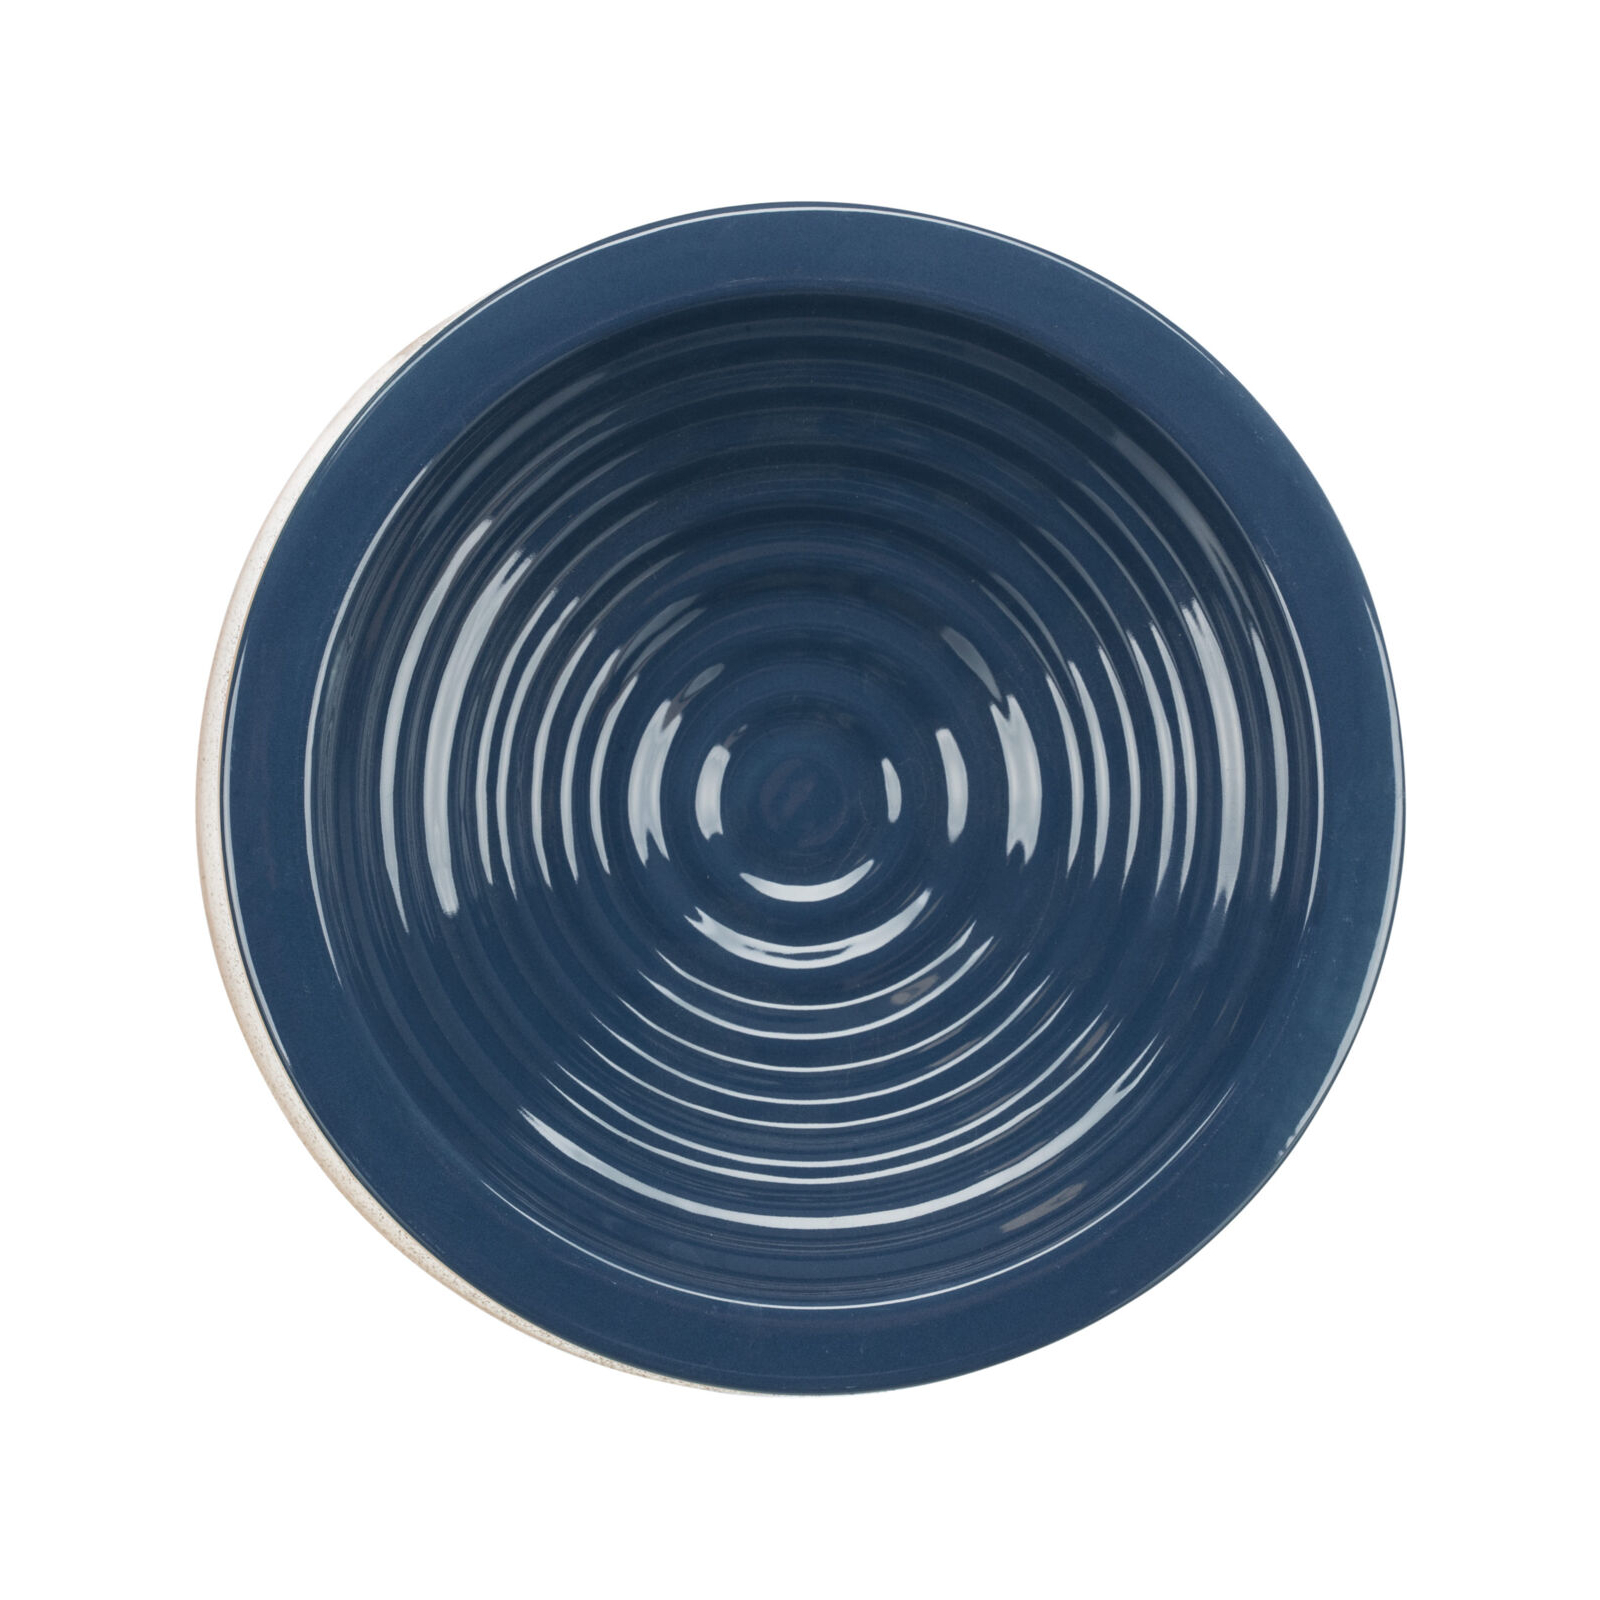 Посуда для собак Trixie Миска керамическая BE NORDIC 500 мл/20 см (синяя/бежевая) (4011905243016) изображение 2